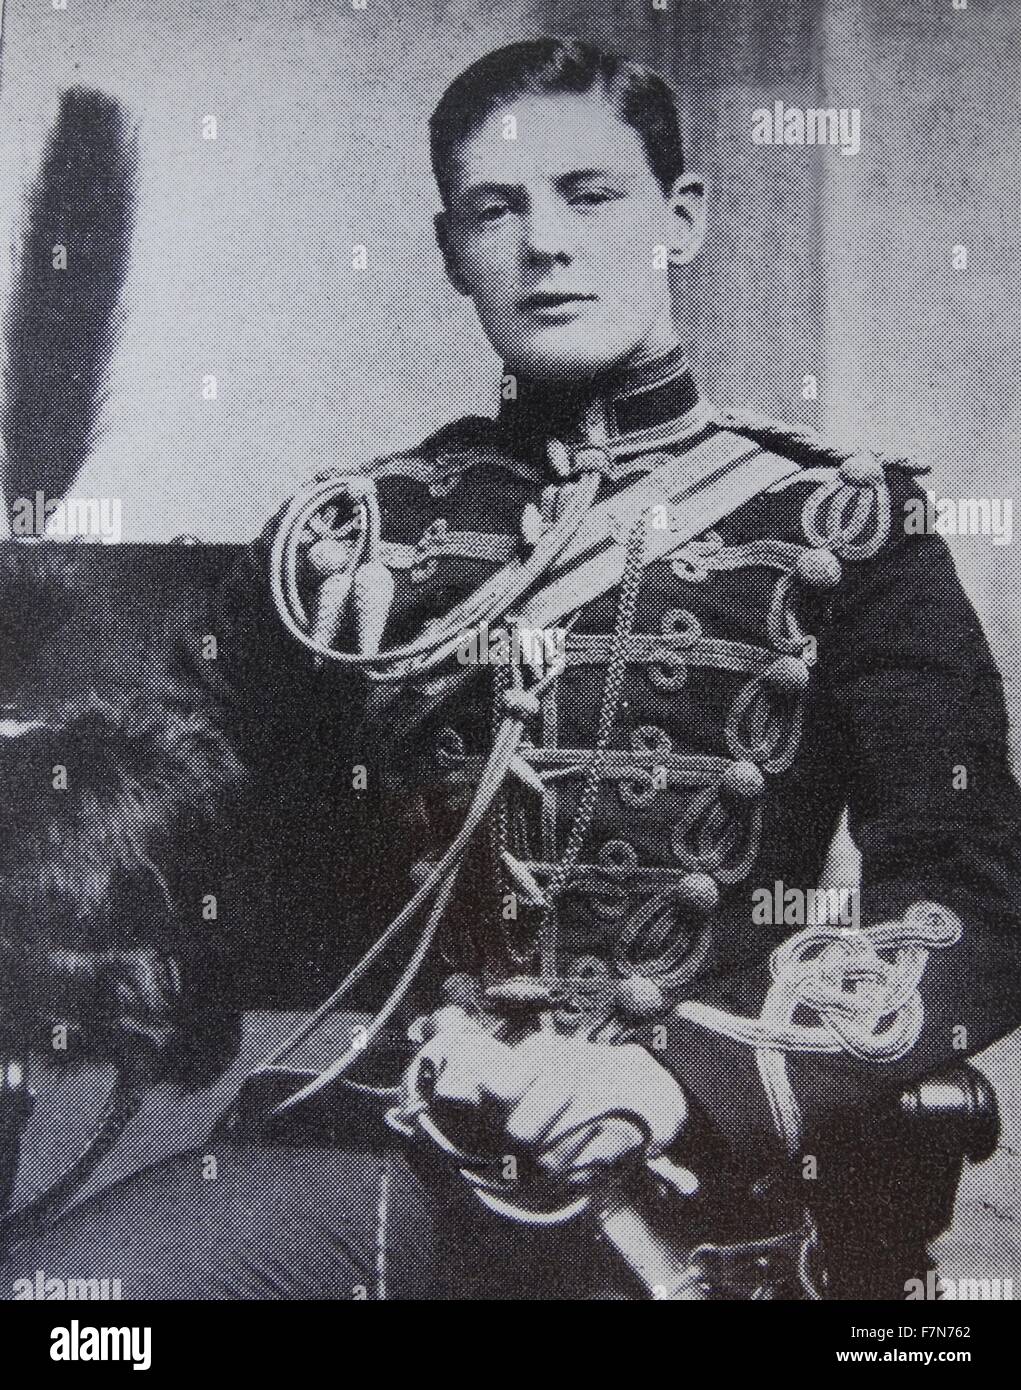 Winston Churchill en uniforme militaire, 1895. Churchill (1874-1965) Premier Ministre du Royaume-Uni à partir de 1940-1945. Banque D'Images